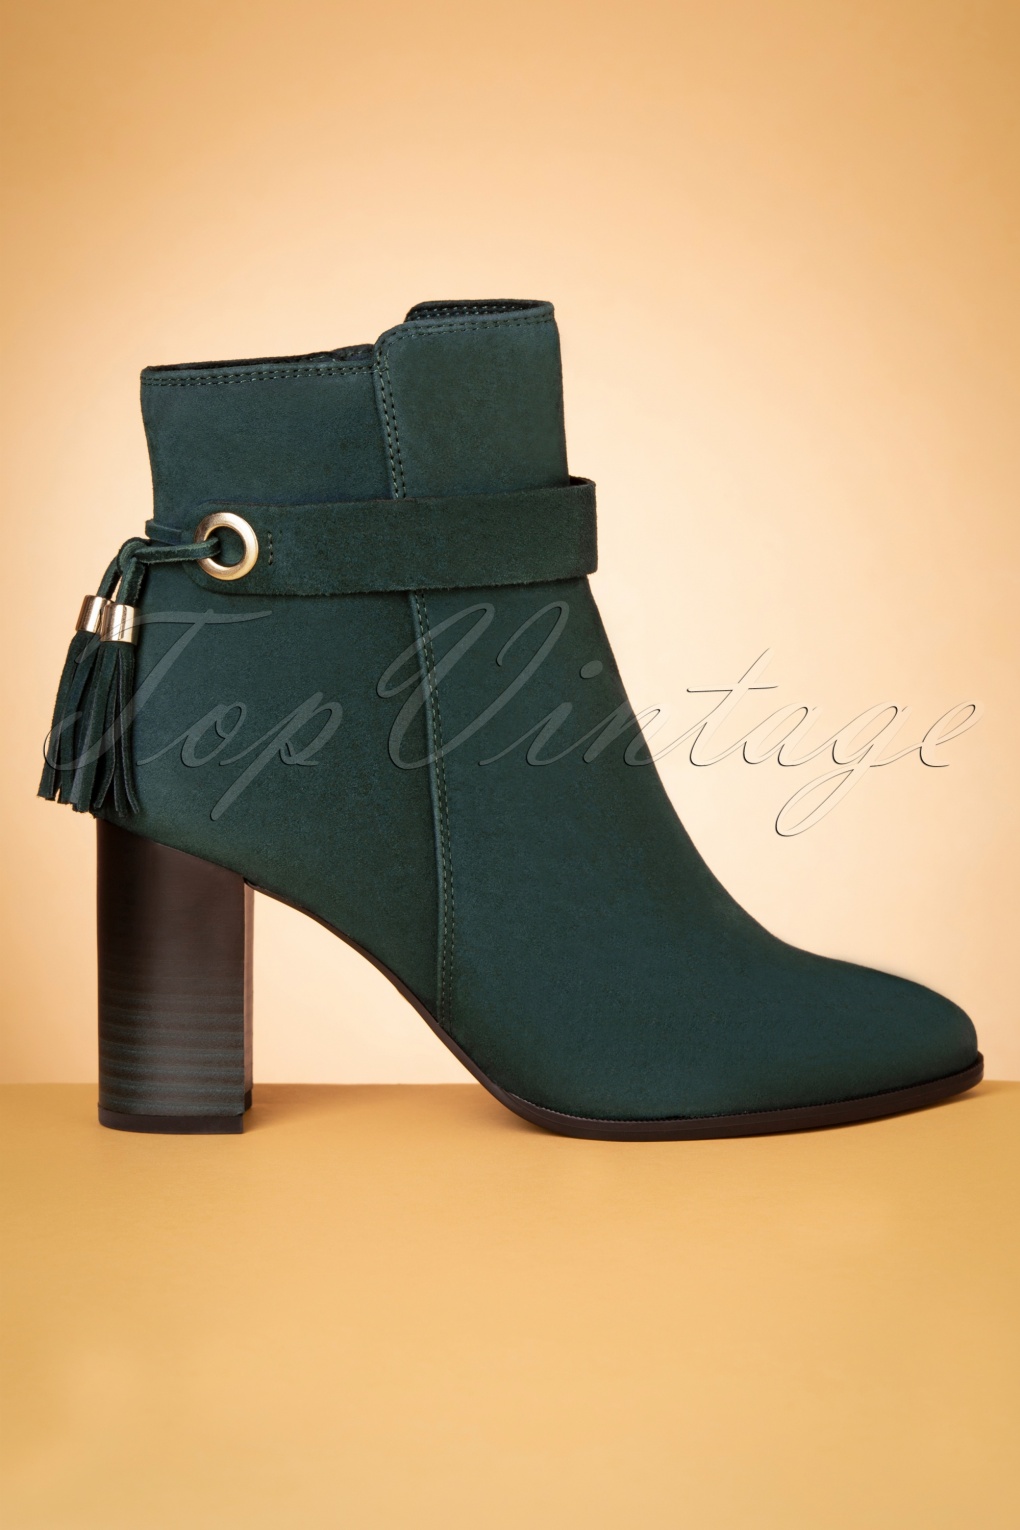 green booties heels